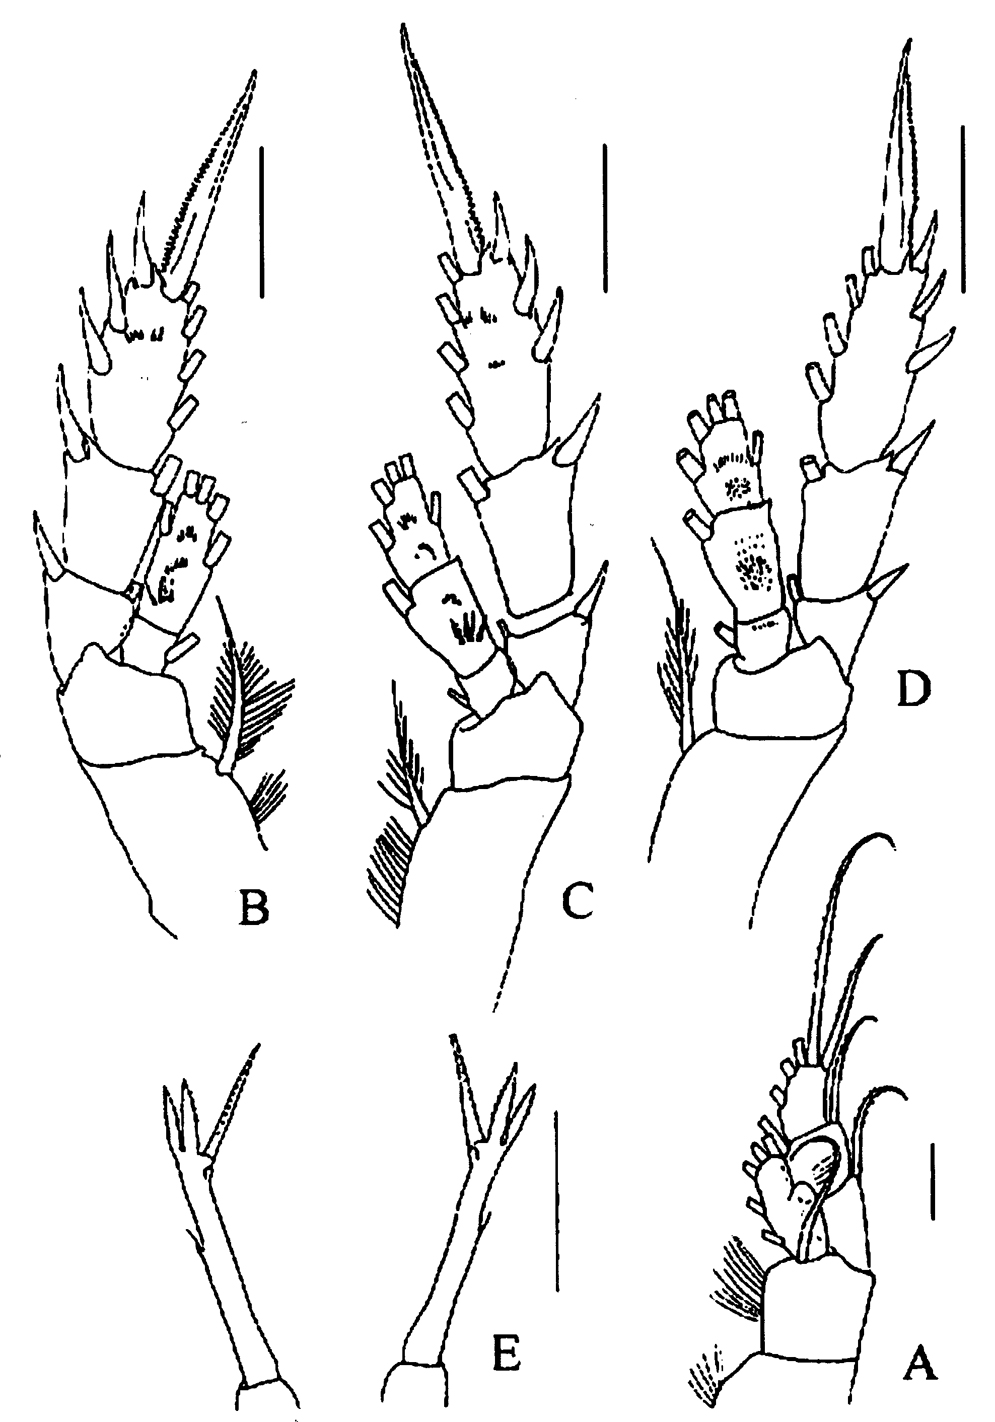 Species Tharybis juhlae - Plate 4 of morphological figures